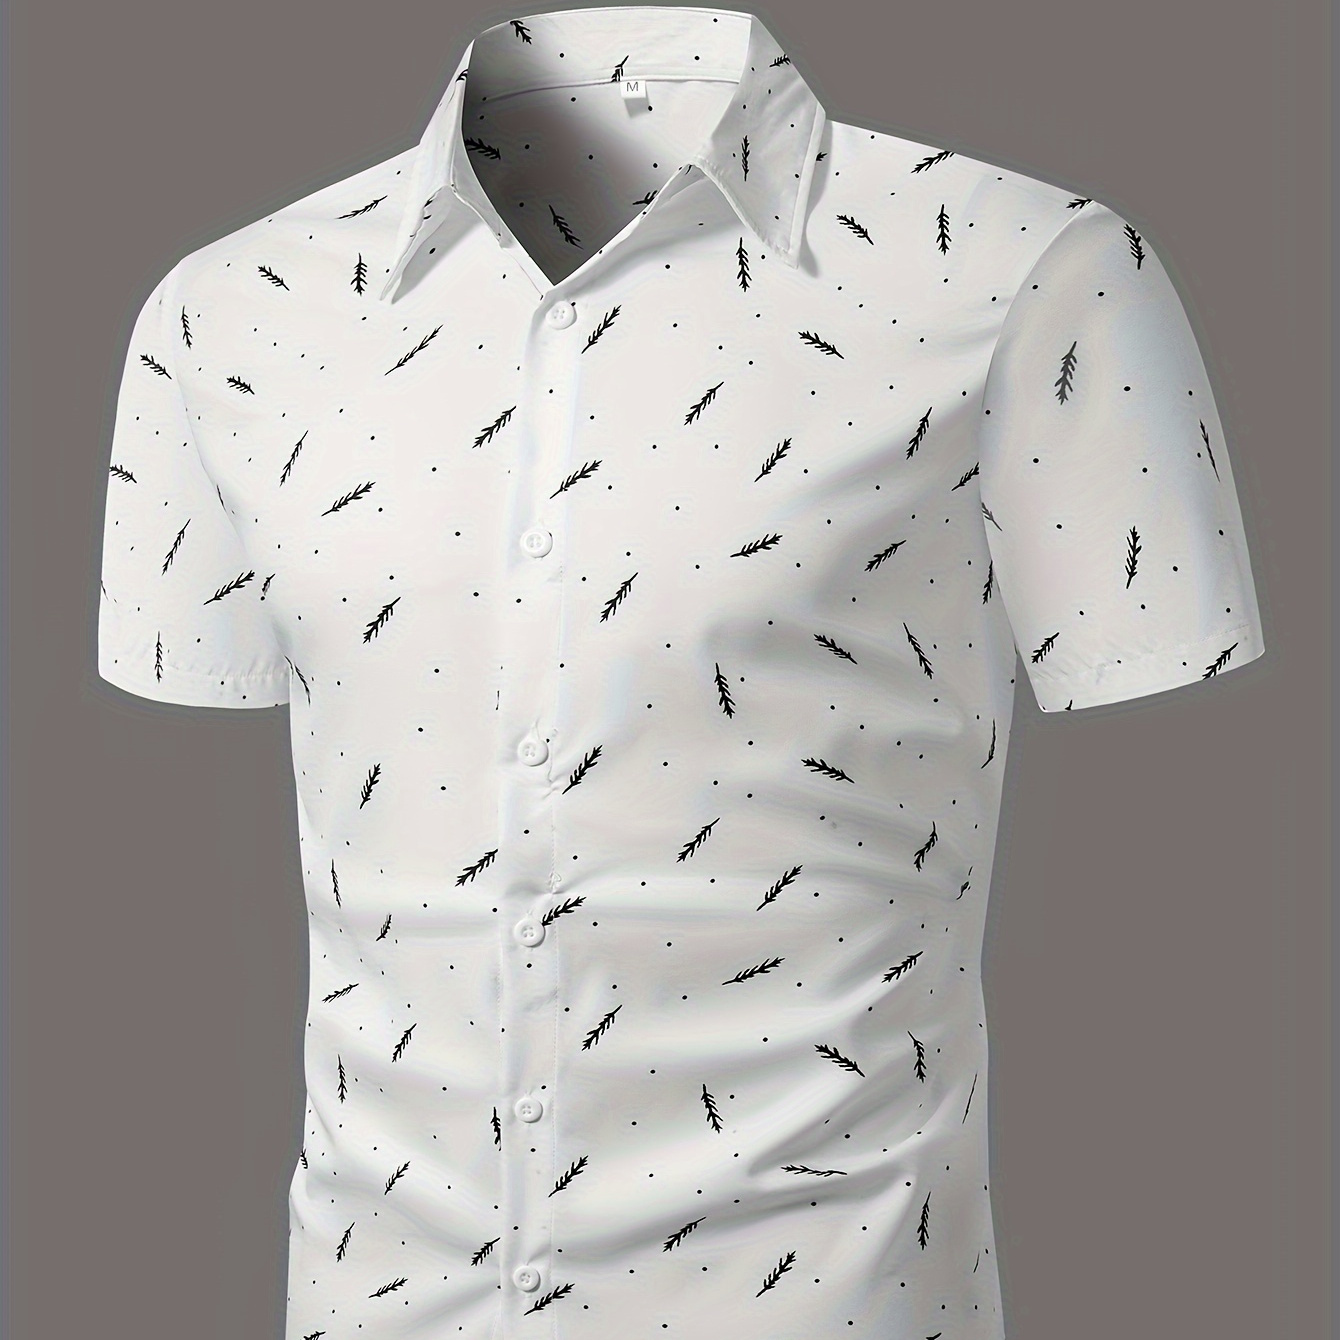 

Feather Full Print Men's Short Sleeve Button Up Shirt, Summer Outdoor Men's Leisurewear